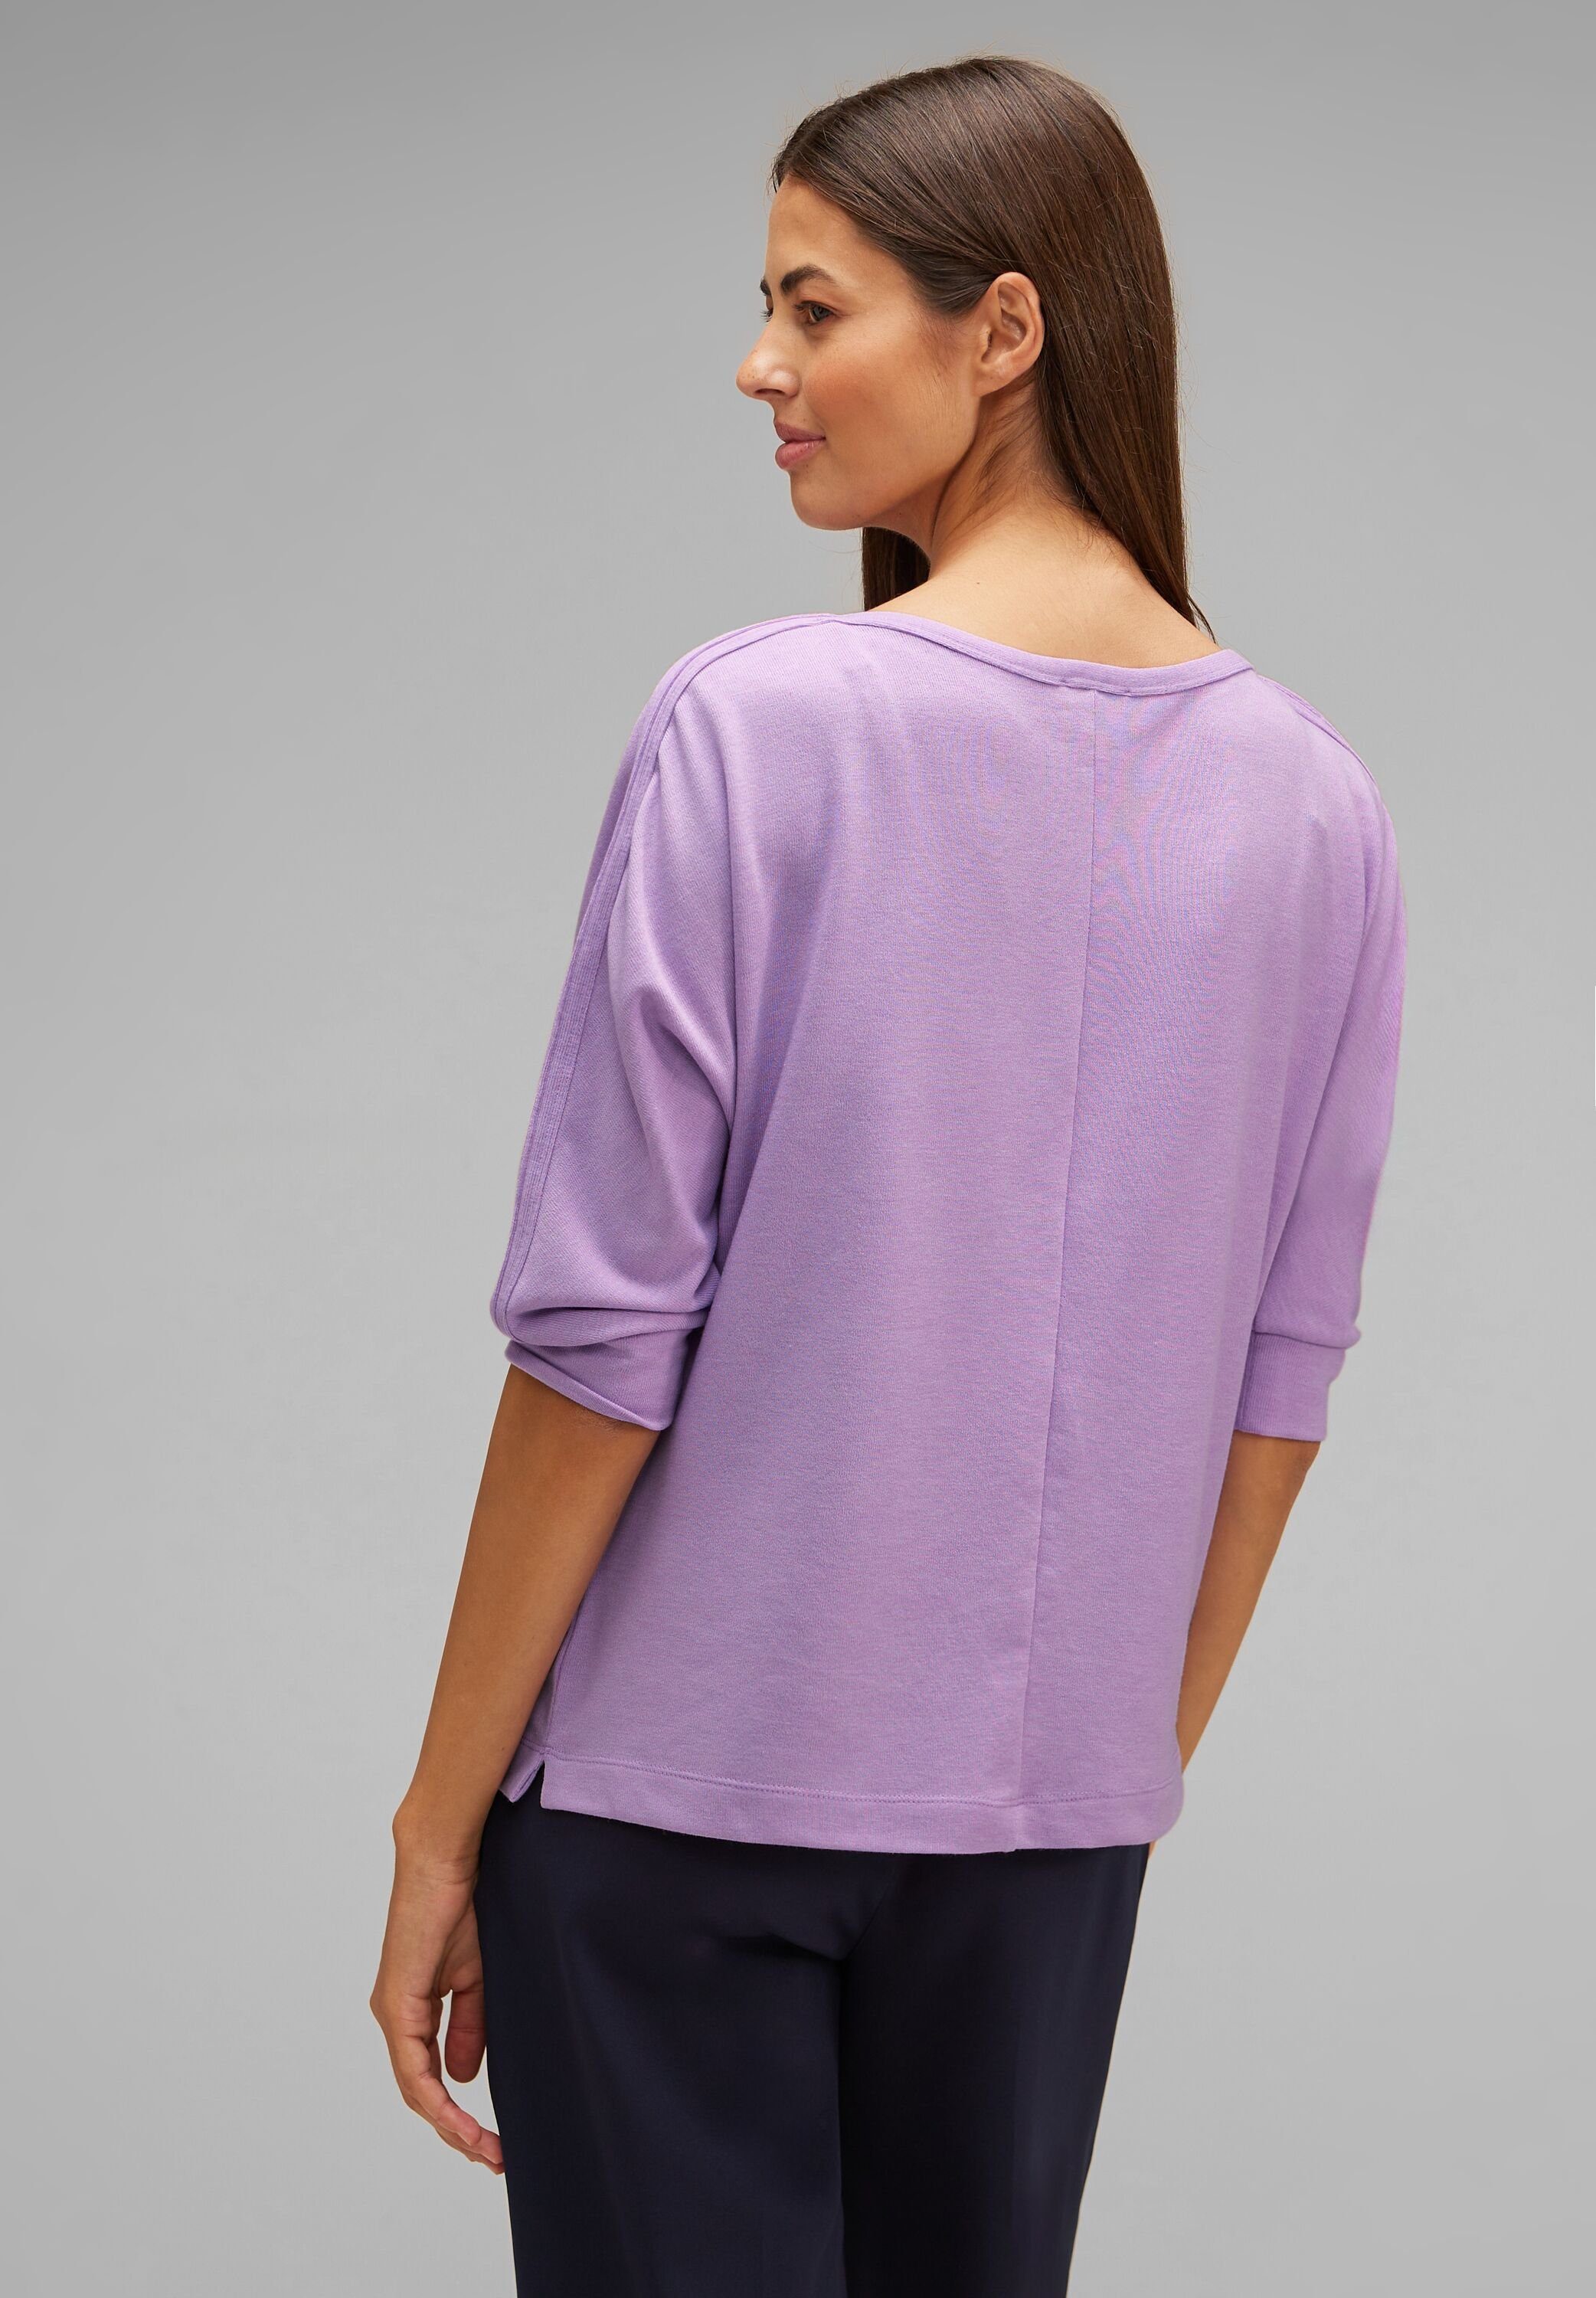 mit melange Schimmer Batwing 3/4-Arm-Shirt soft Typo-Print lilac pure Schimmernder Shirt Wording STREET ONE